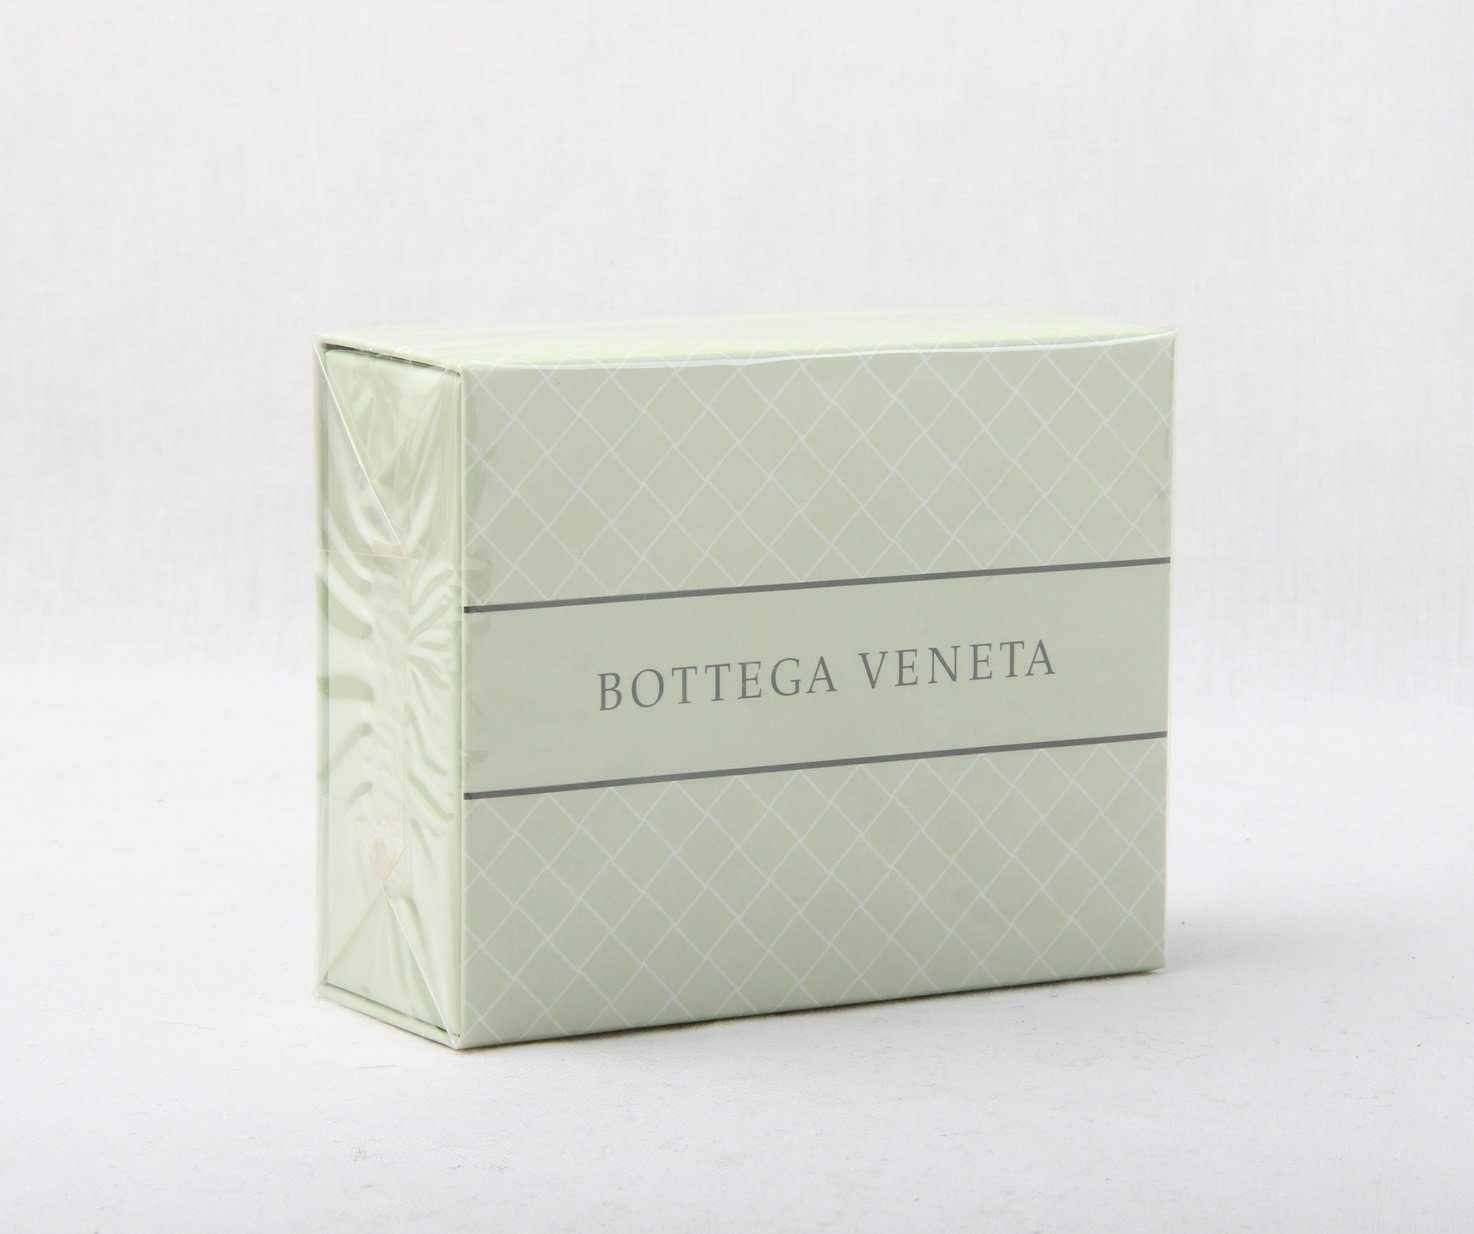 Bottega VENETA 150g Handseife Aromatique Veneta Essence Seife BOTTEGA Soap Perfumed